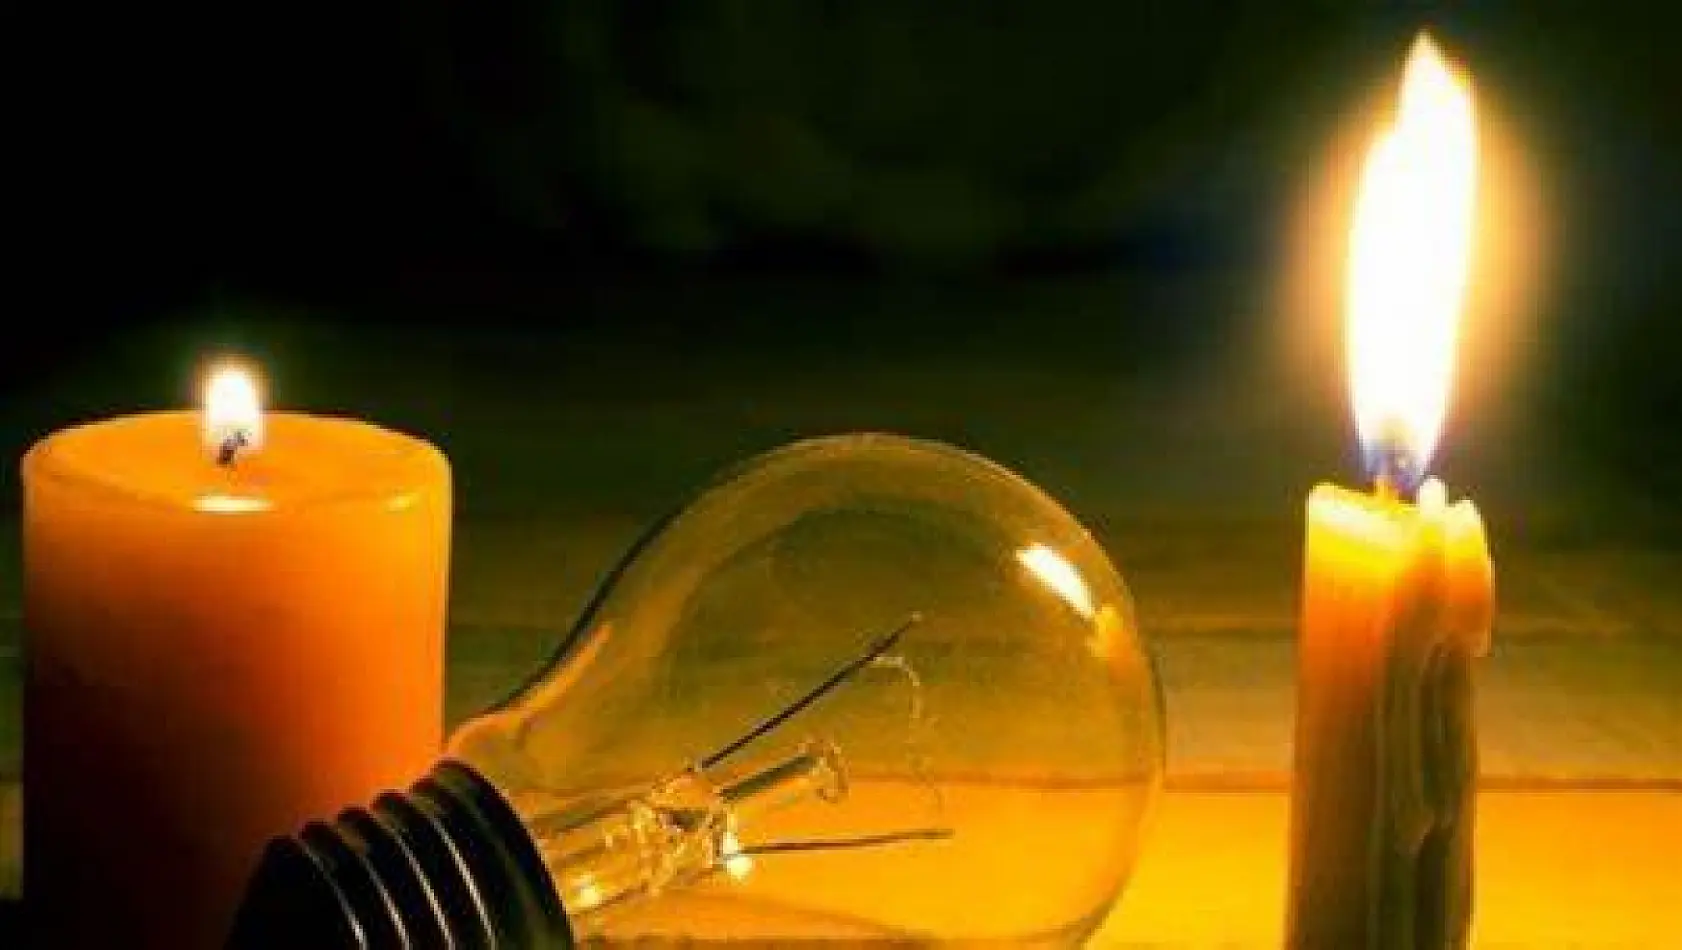 Elazığ'da yarın birçok adreste elektrik kesintisi yaşanacak: Bazı noktalarda 6 saat elektrik olmayacak! İşte detaylar